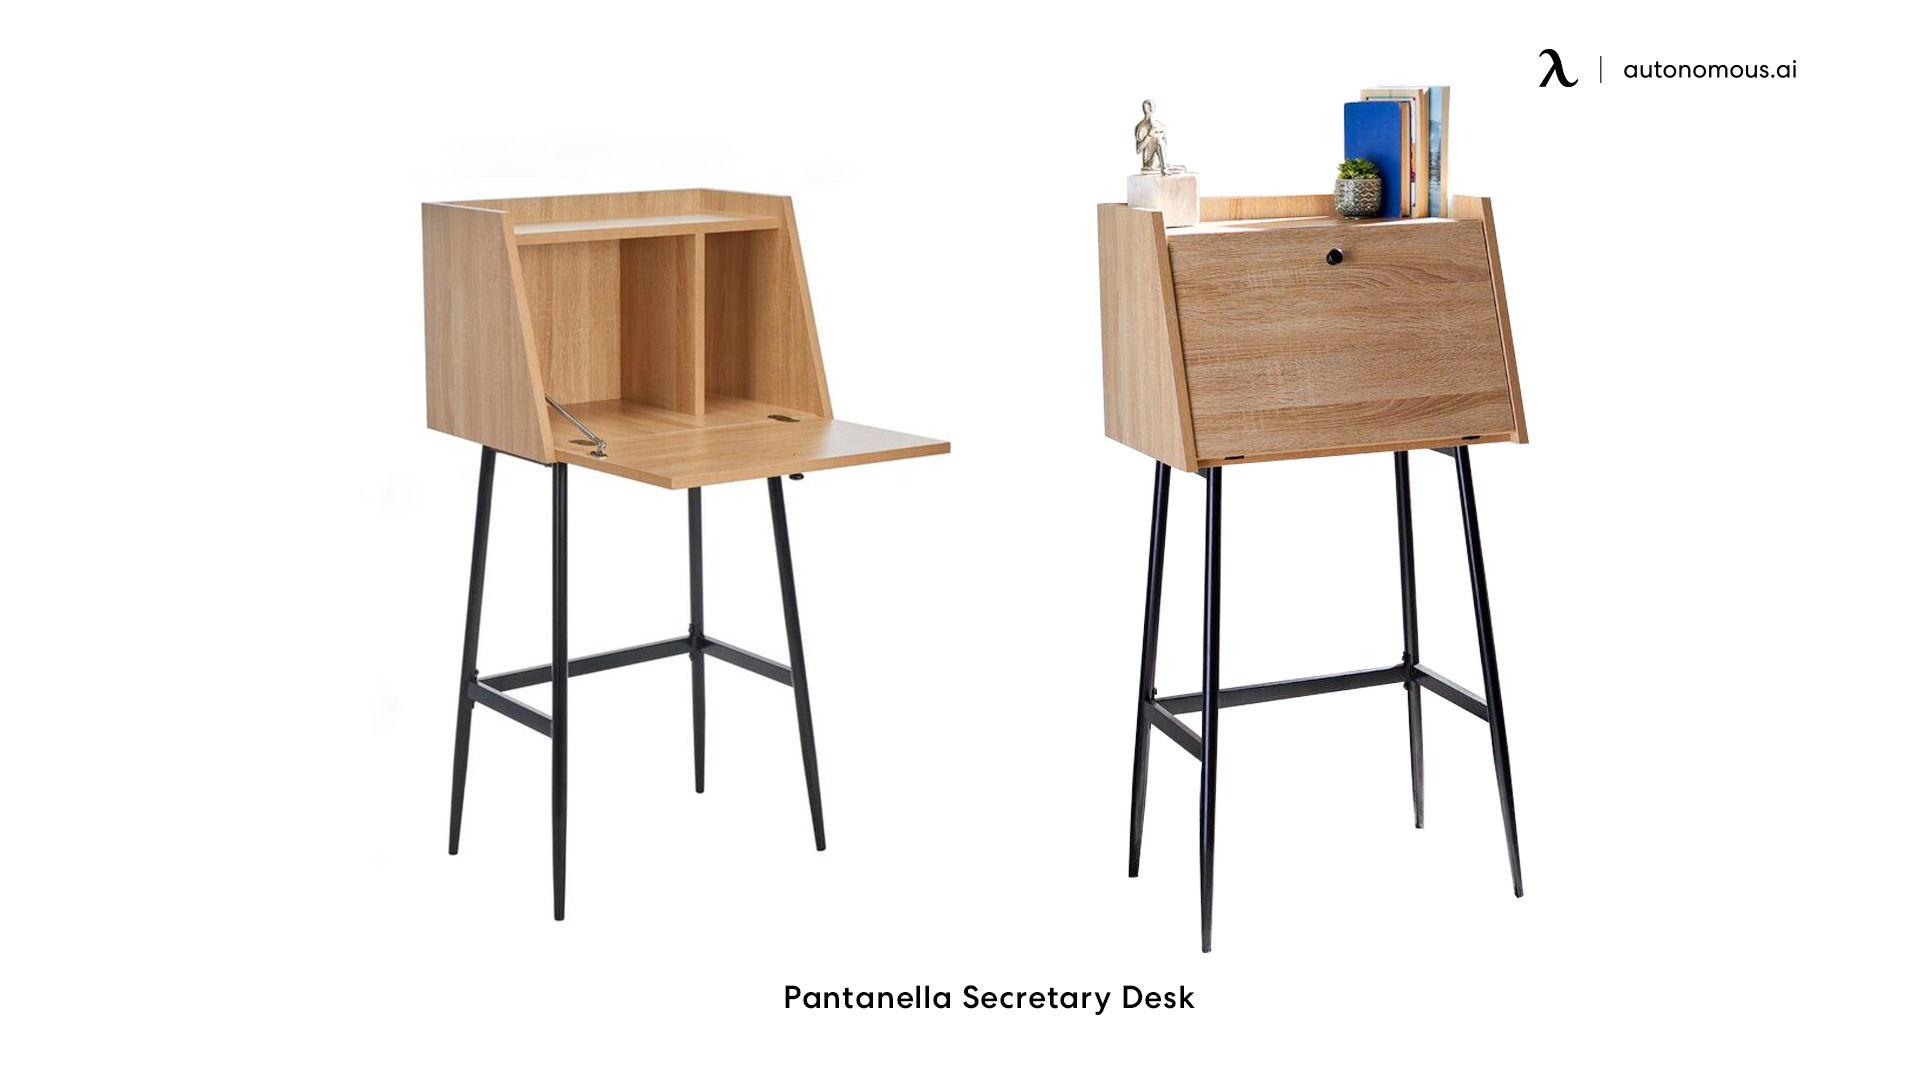 Pantanella Secretary Desk